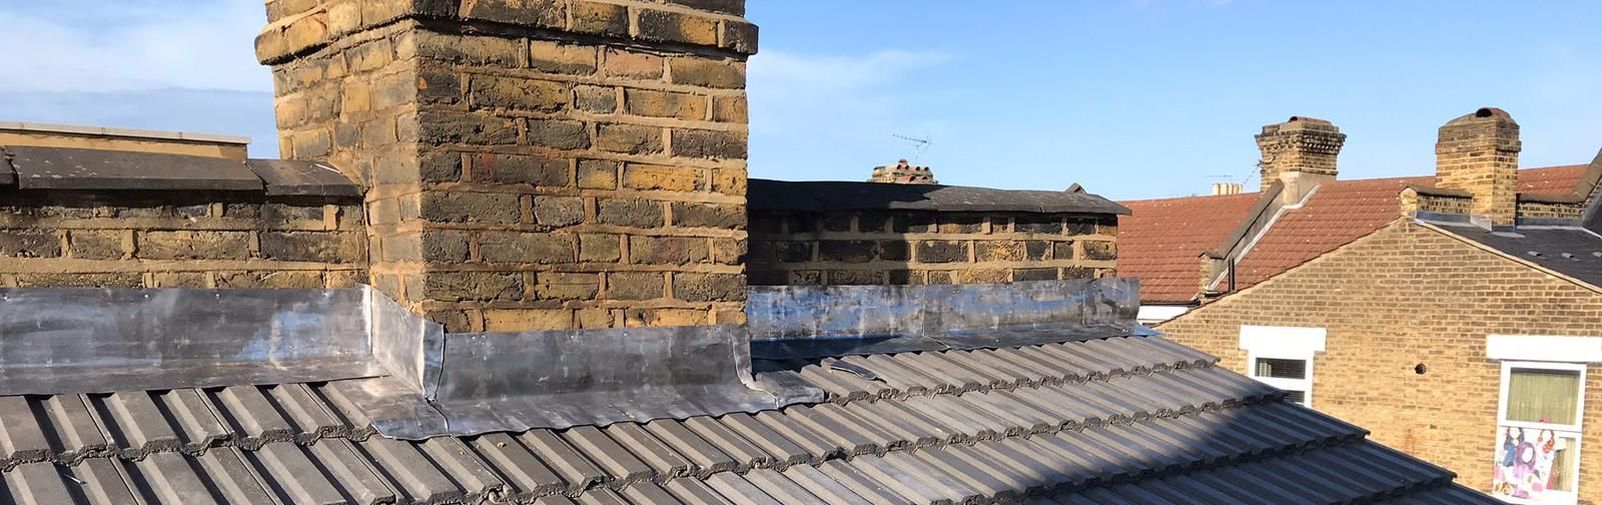 Enfield roof repairs 1